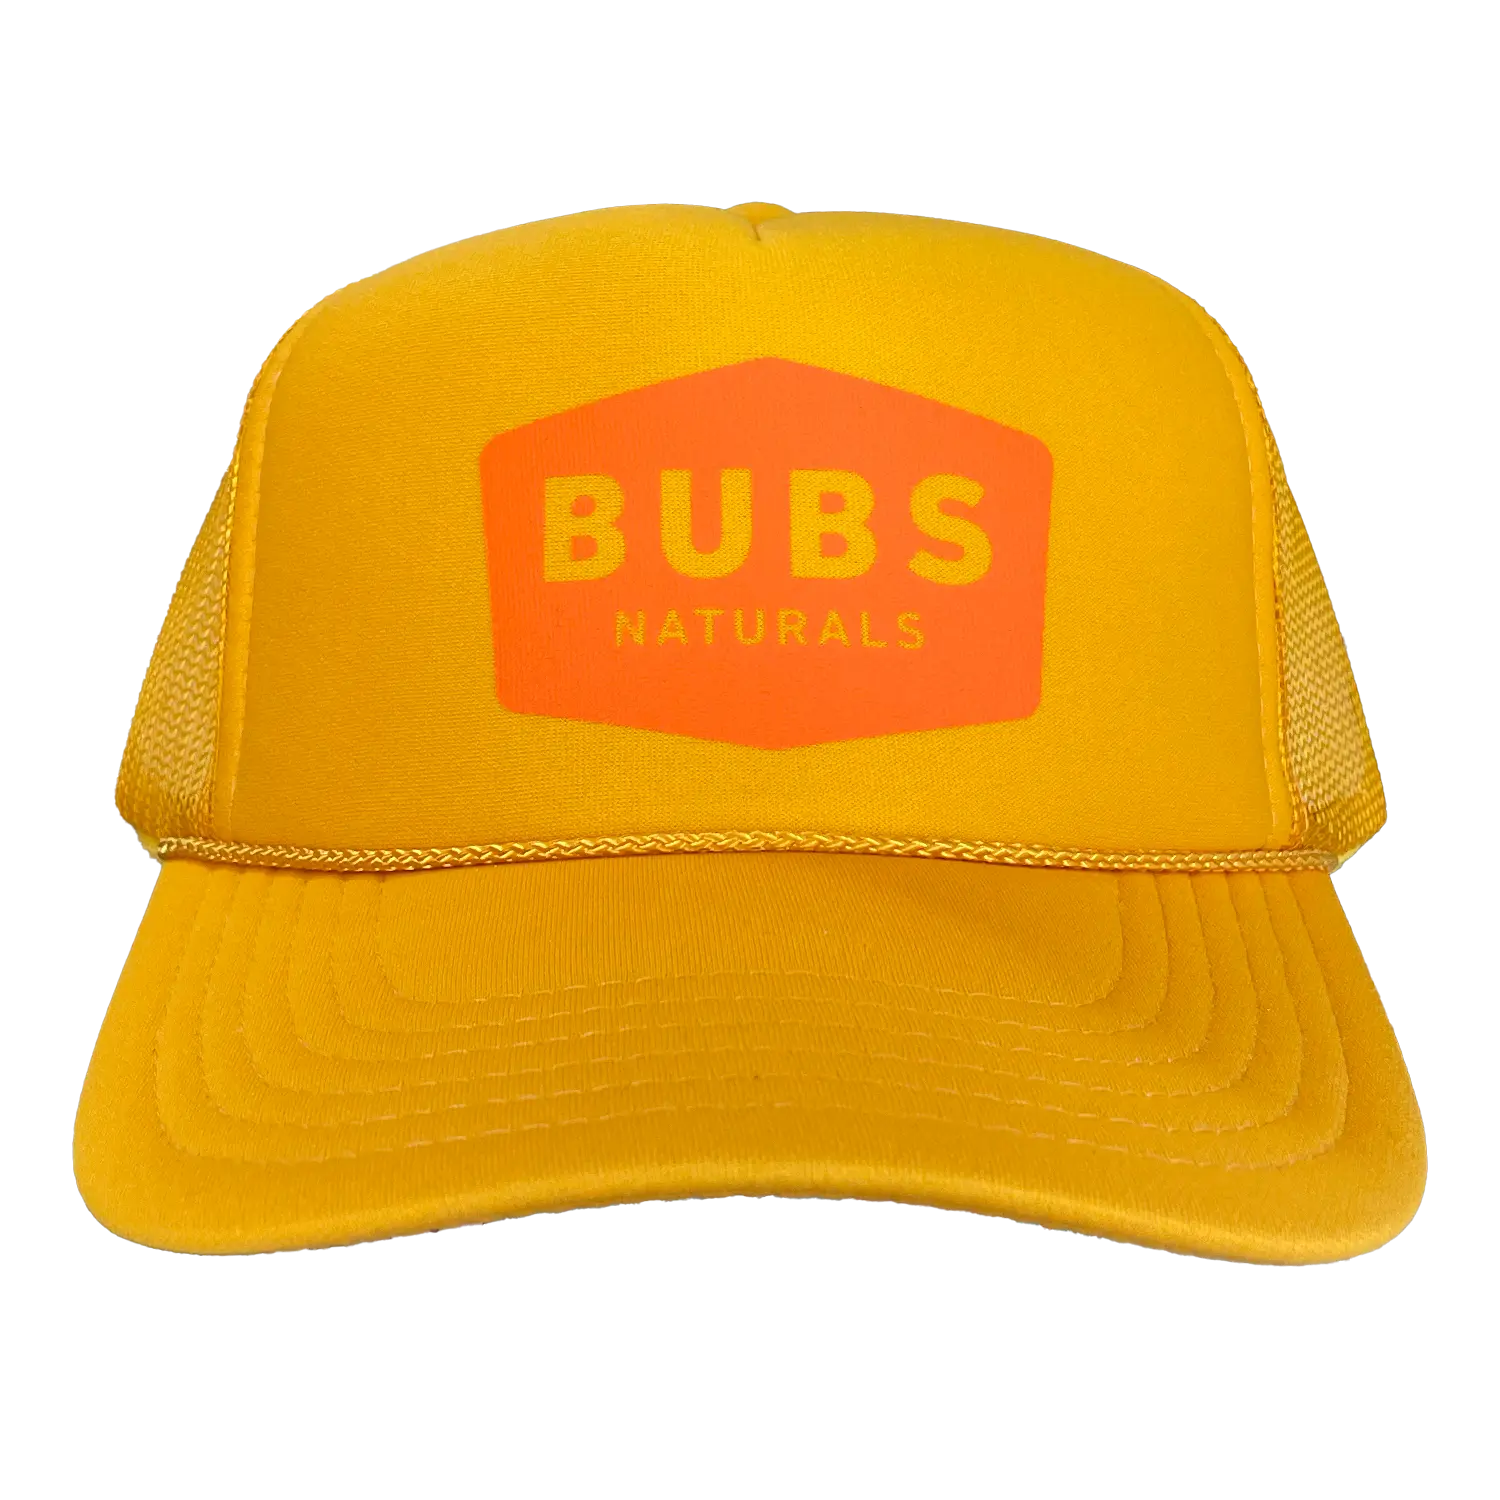 BUBS Naturals Trucker Hat Orange